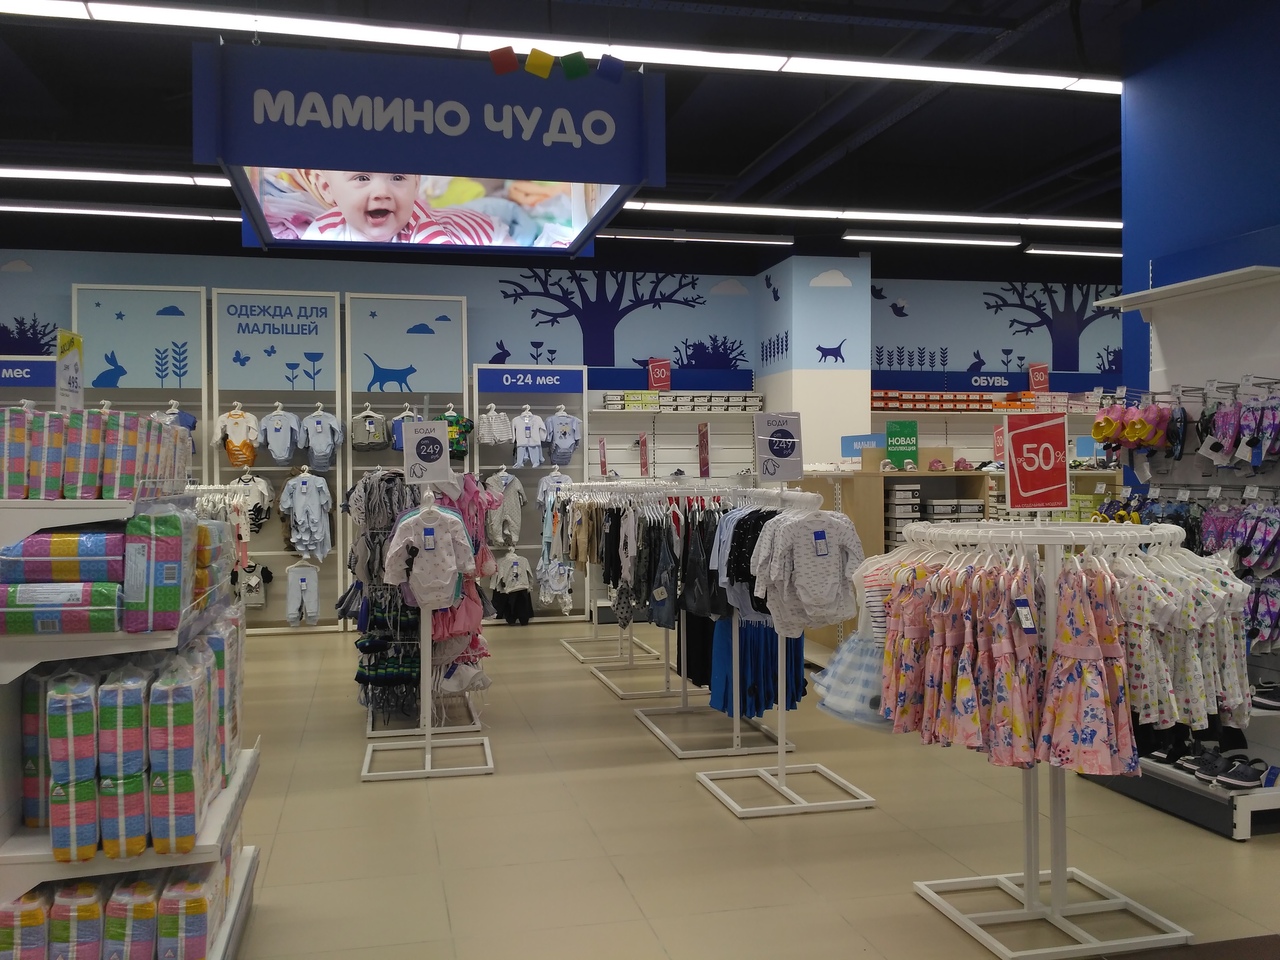 Магазин Детский Мир В Нижнем Новгороде Каталог